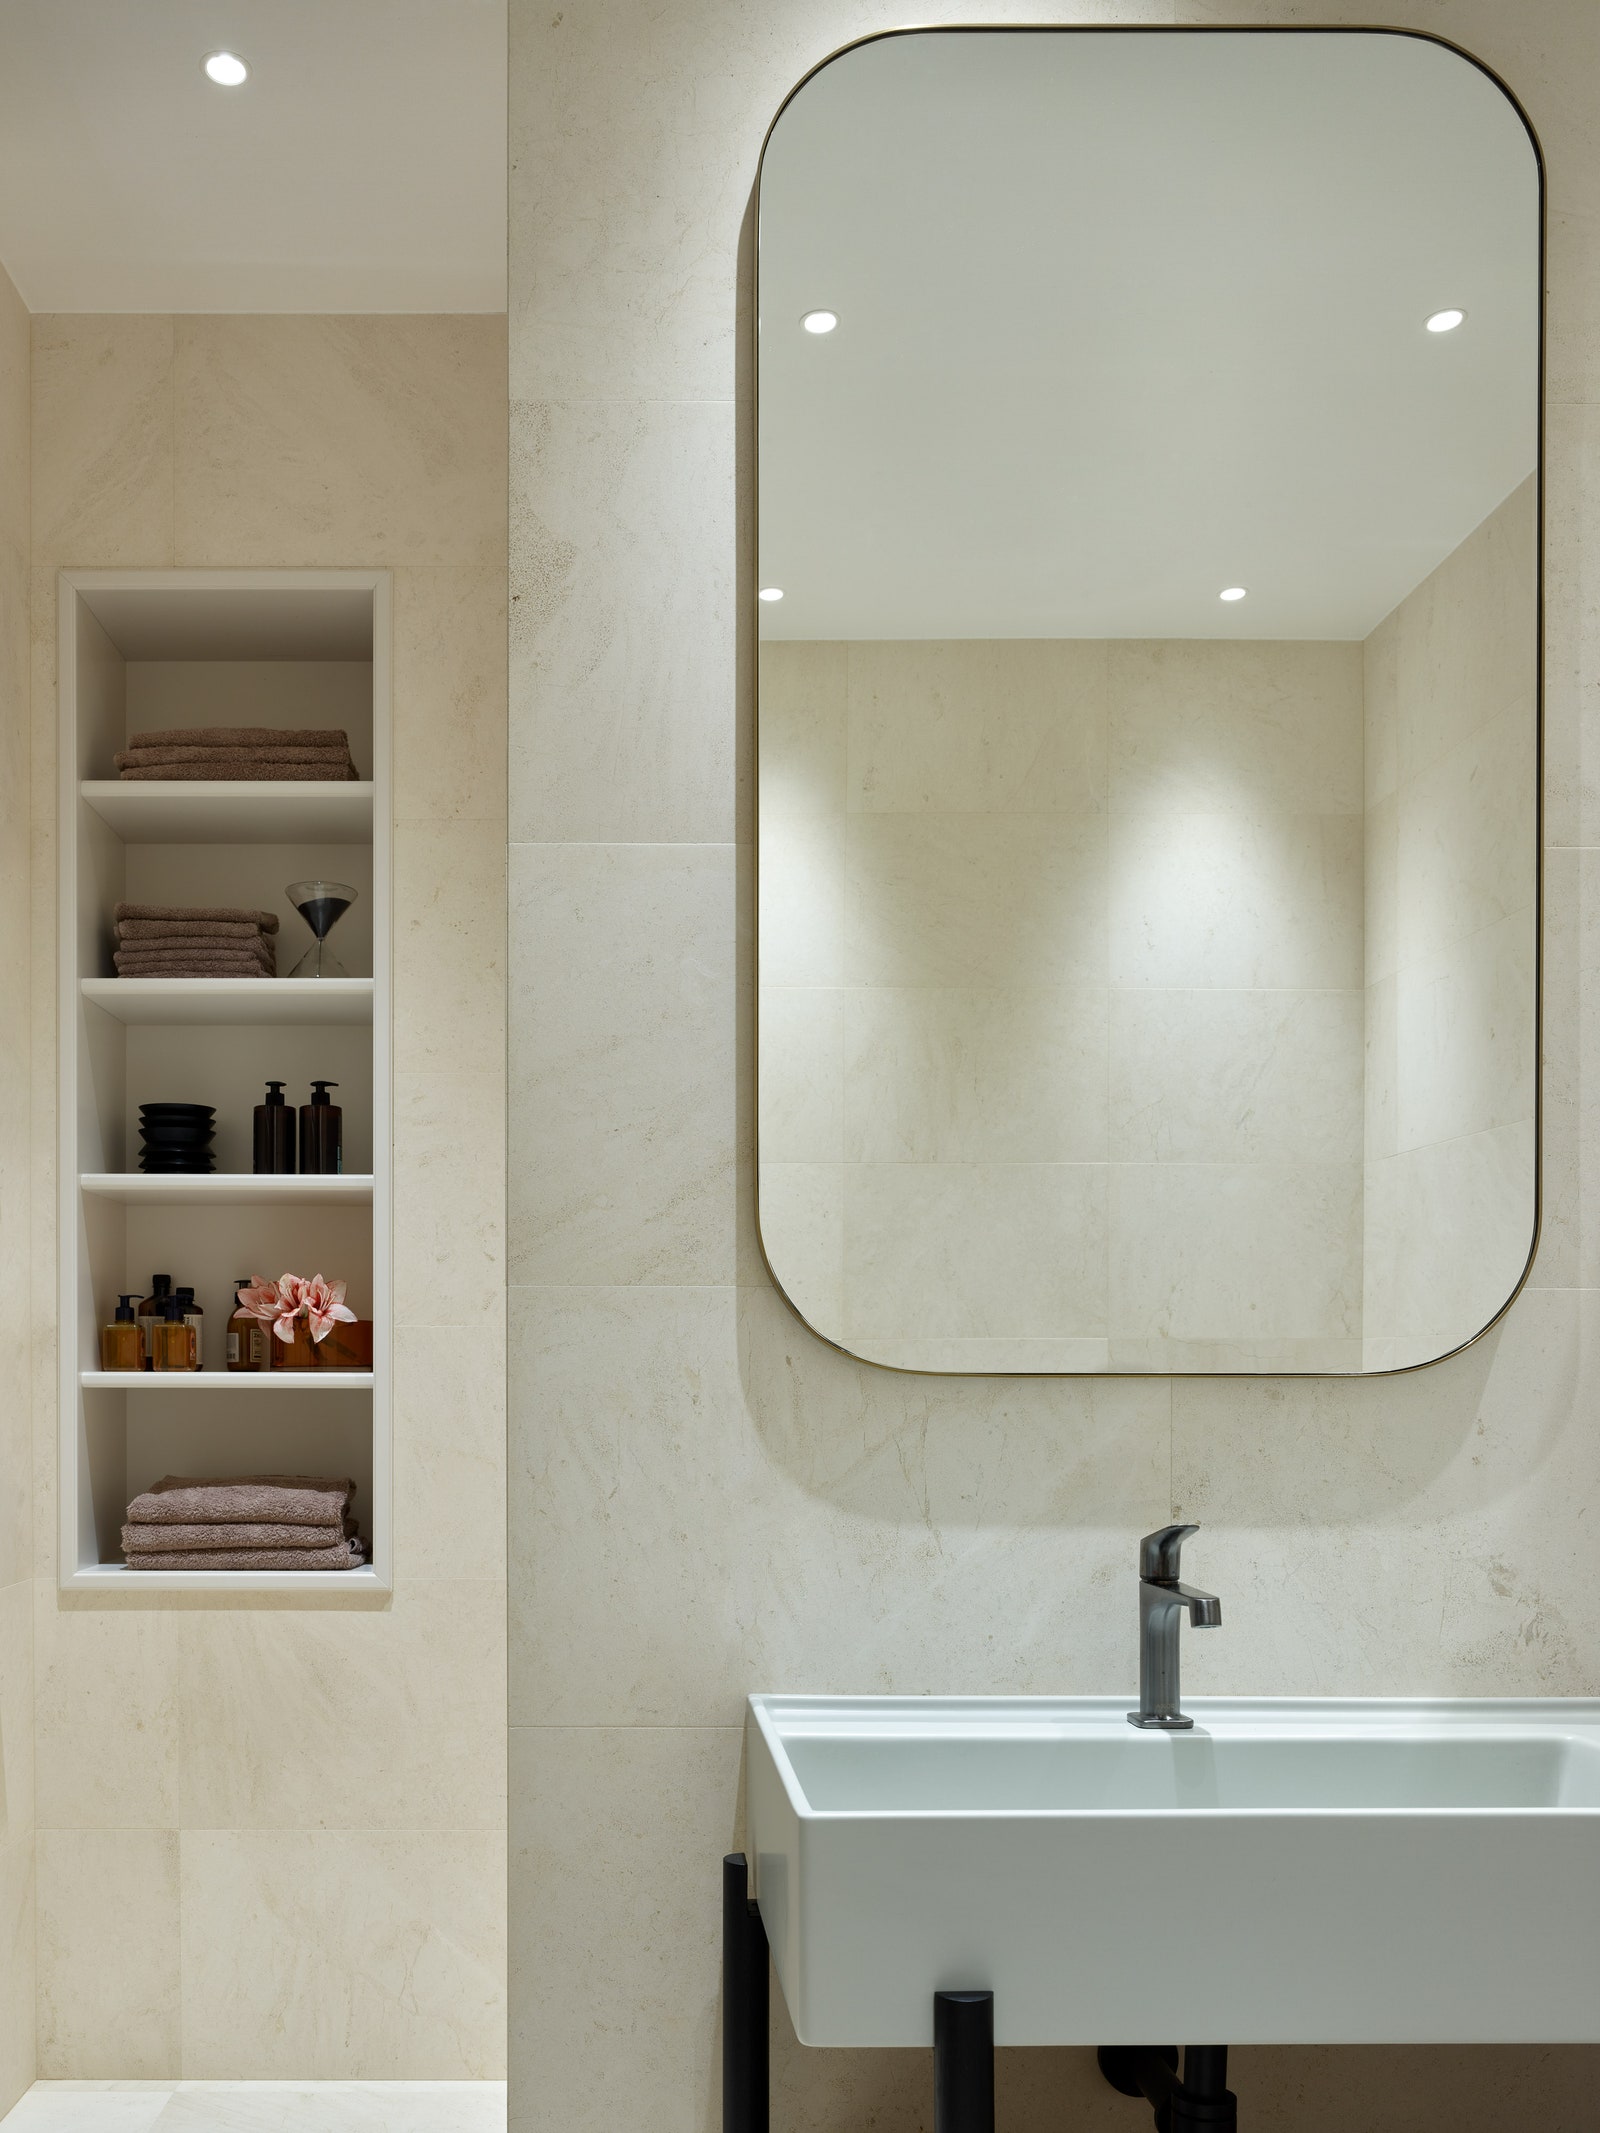 Фрагмент ванной комнаты. Зеркало в латунной раме выполнено по эскизам дизайнеров компанией Furnitek.